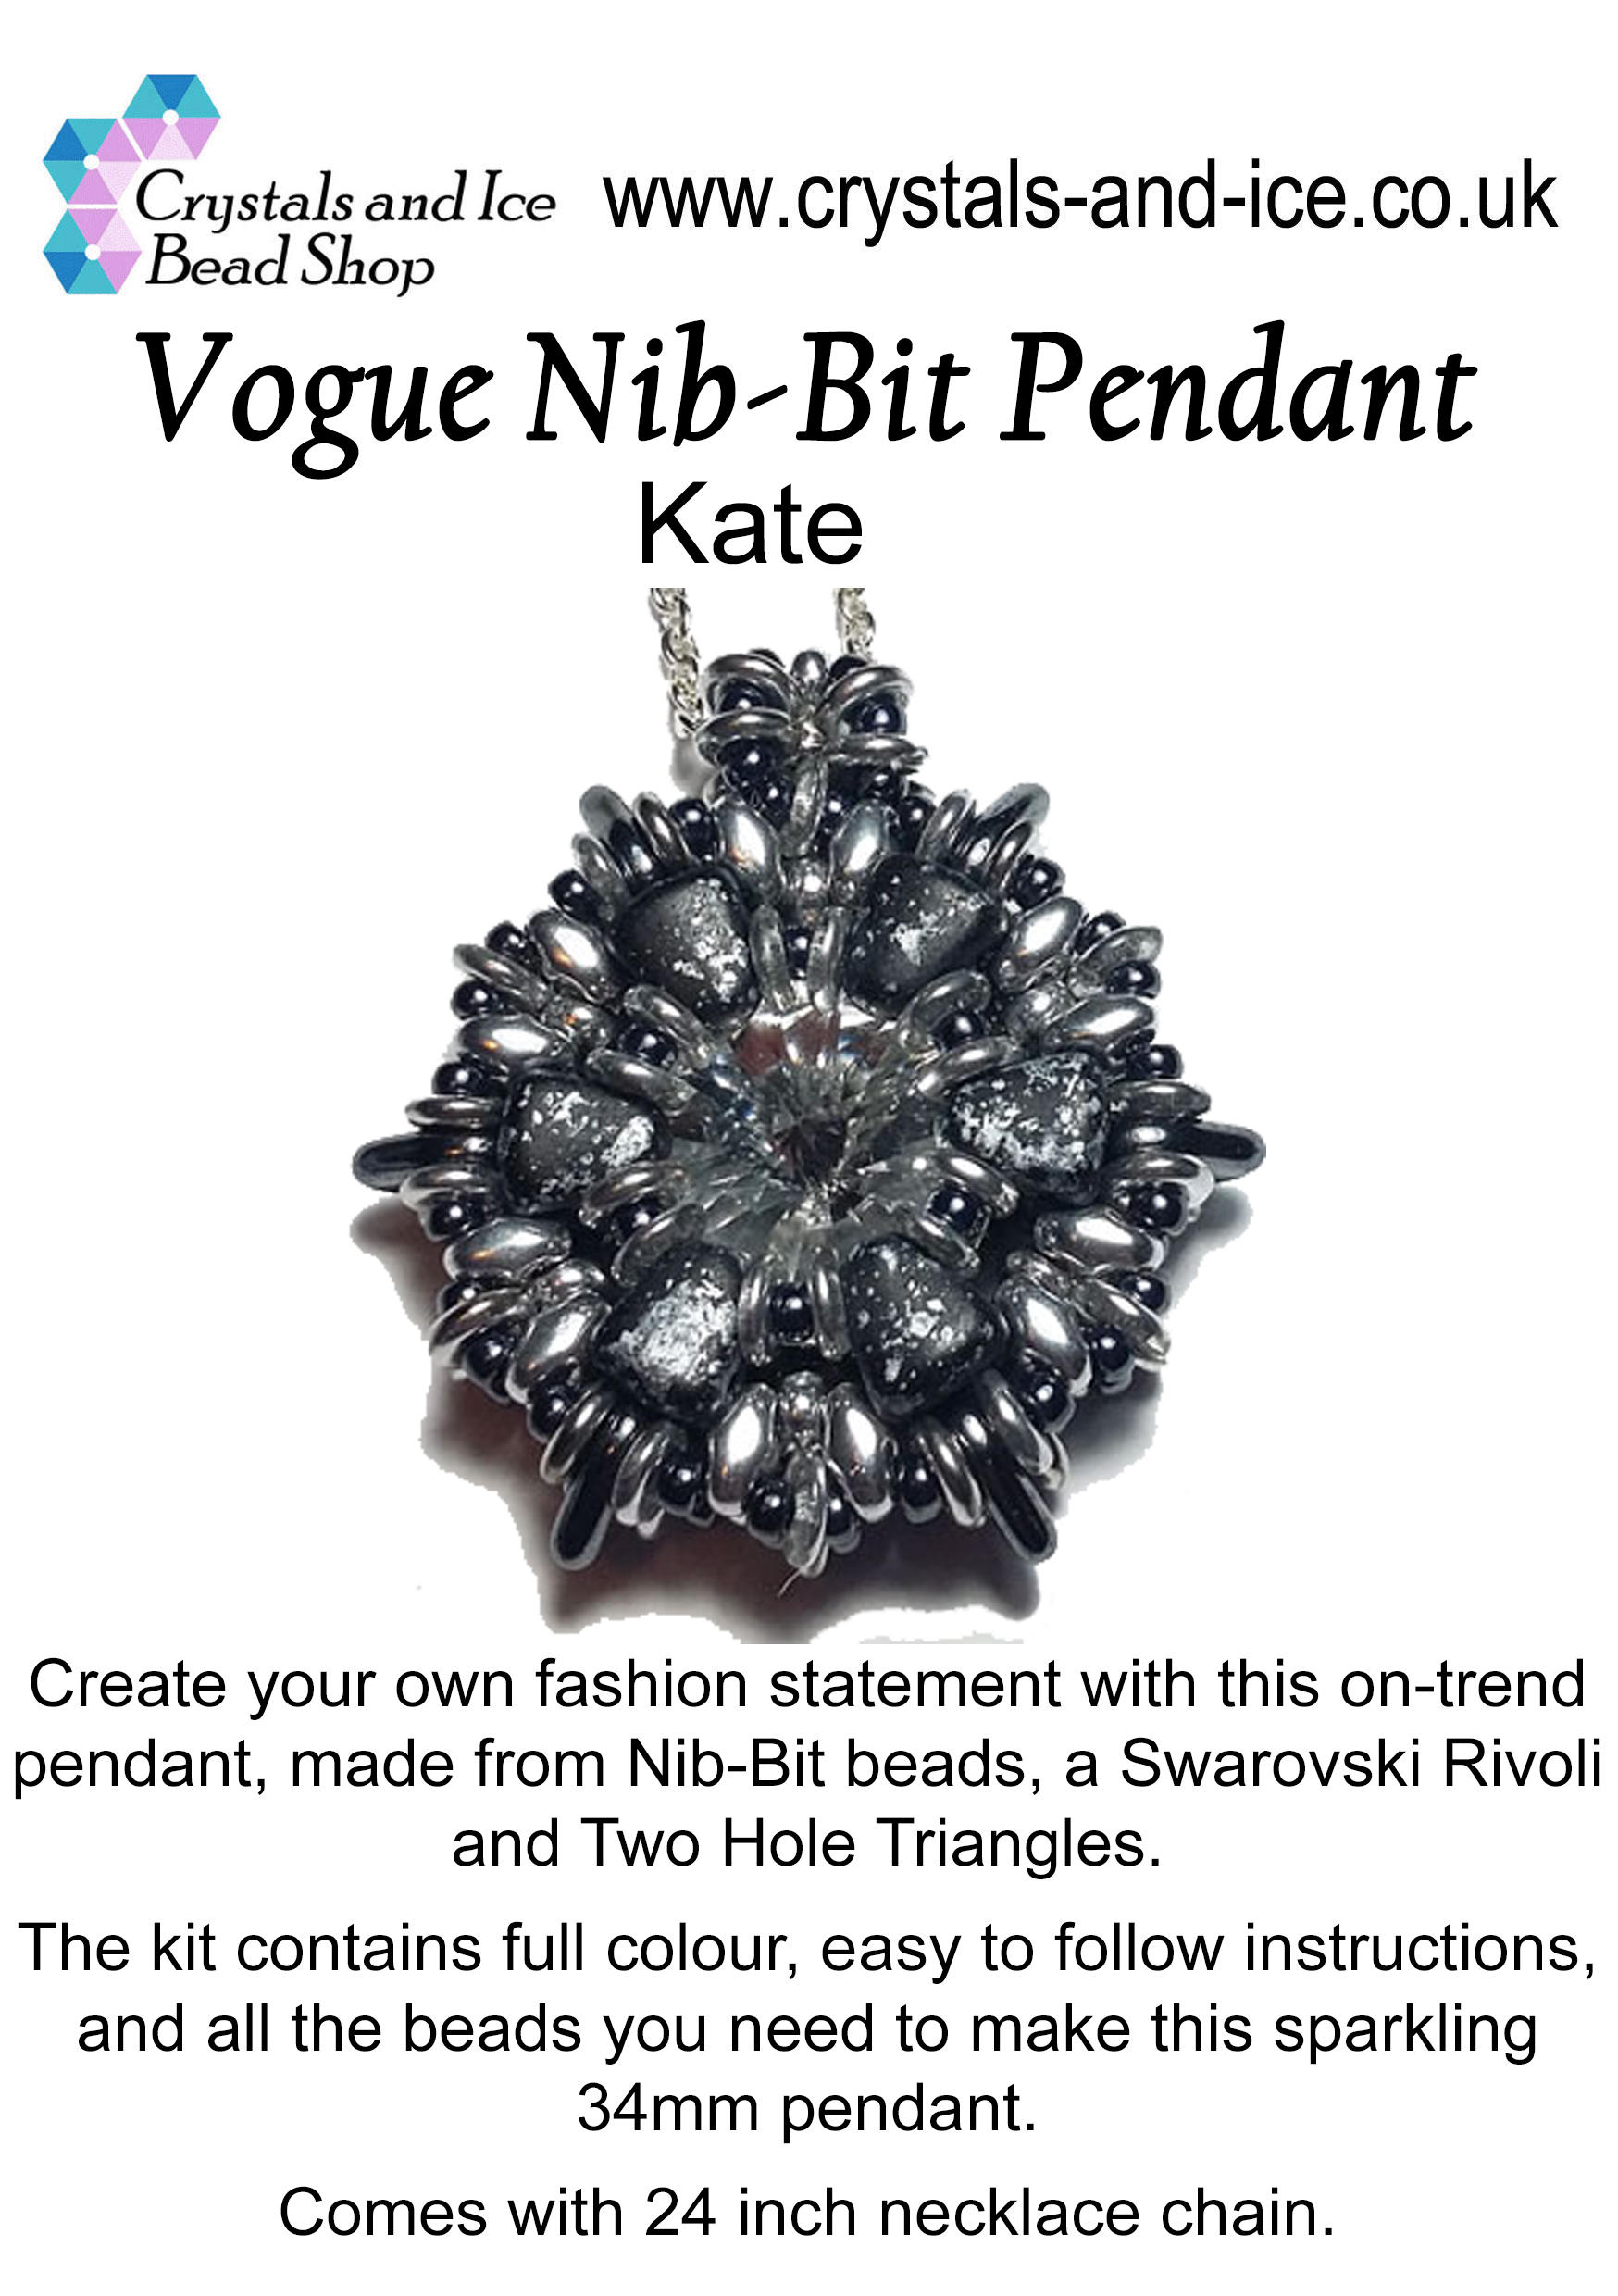 Vogue Nib-Bit Pendant Kit - Kate